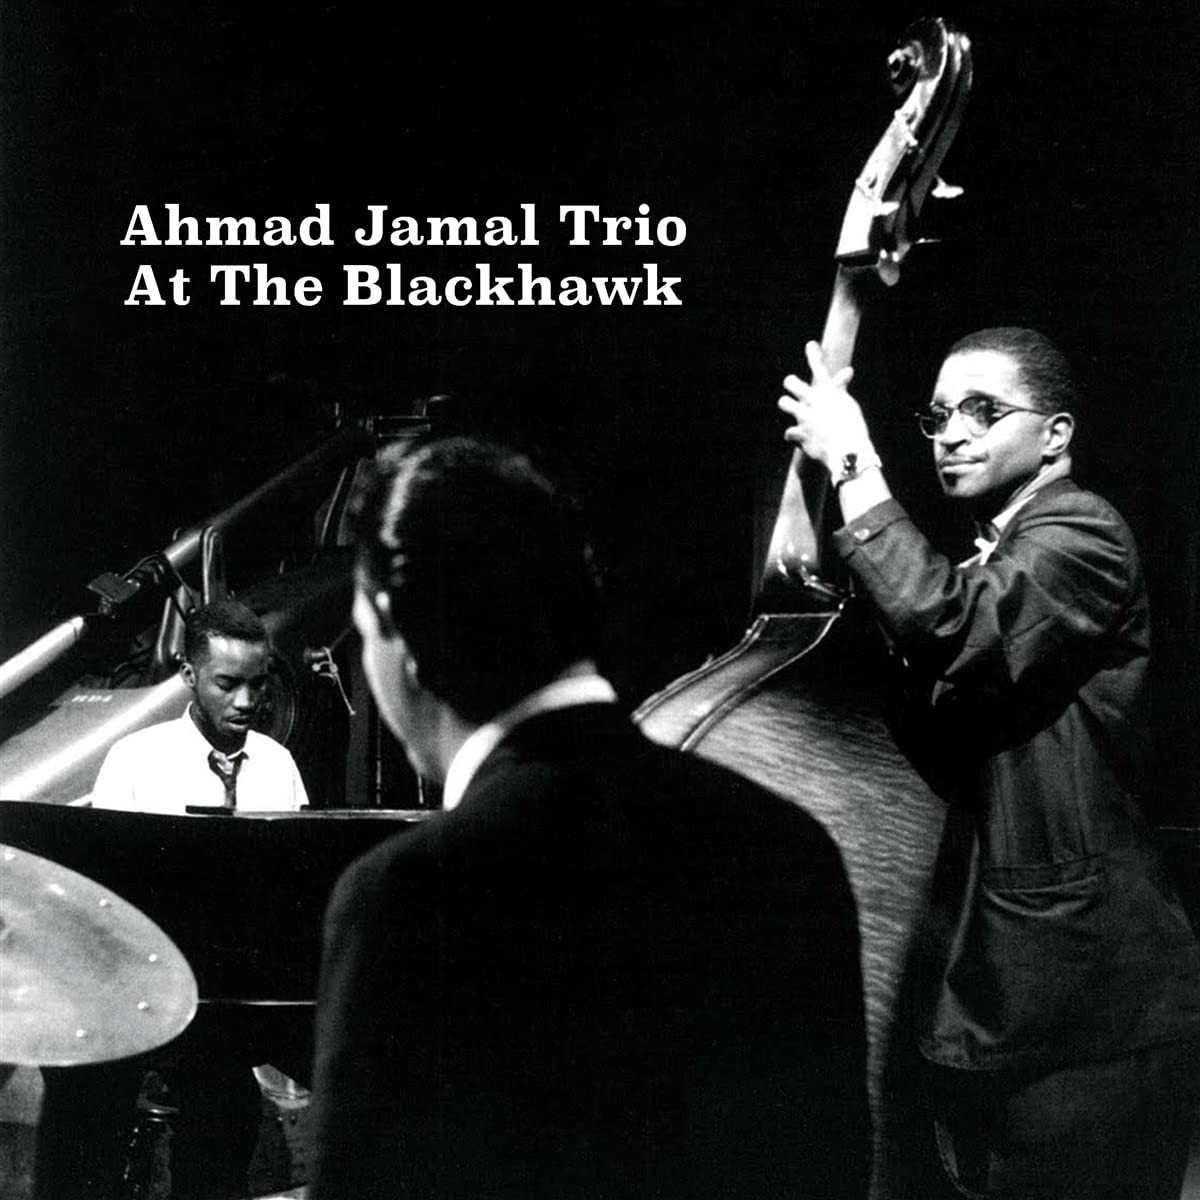 The Ahmad Jamal Trio - At The Blackhawk